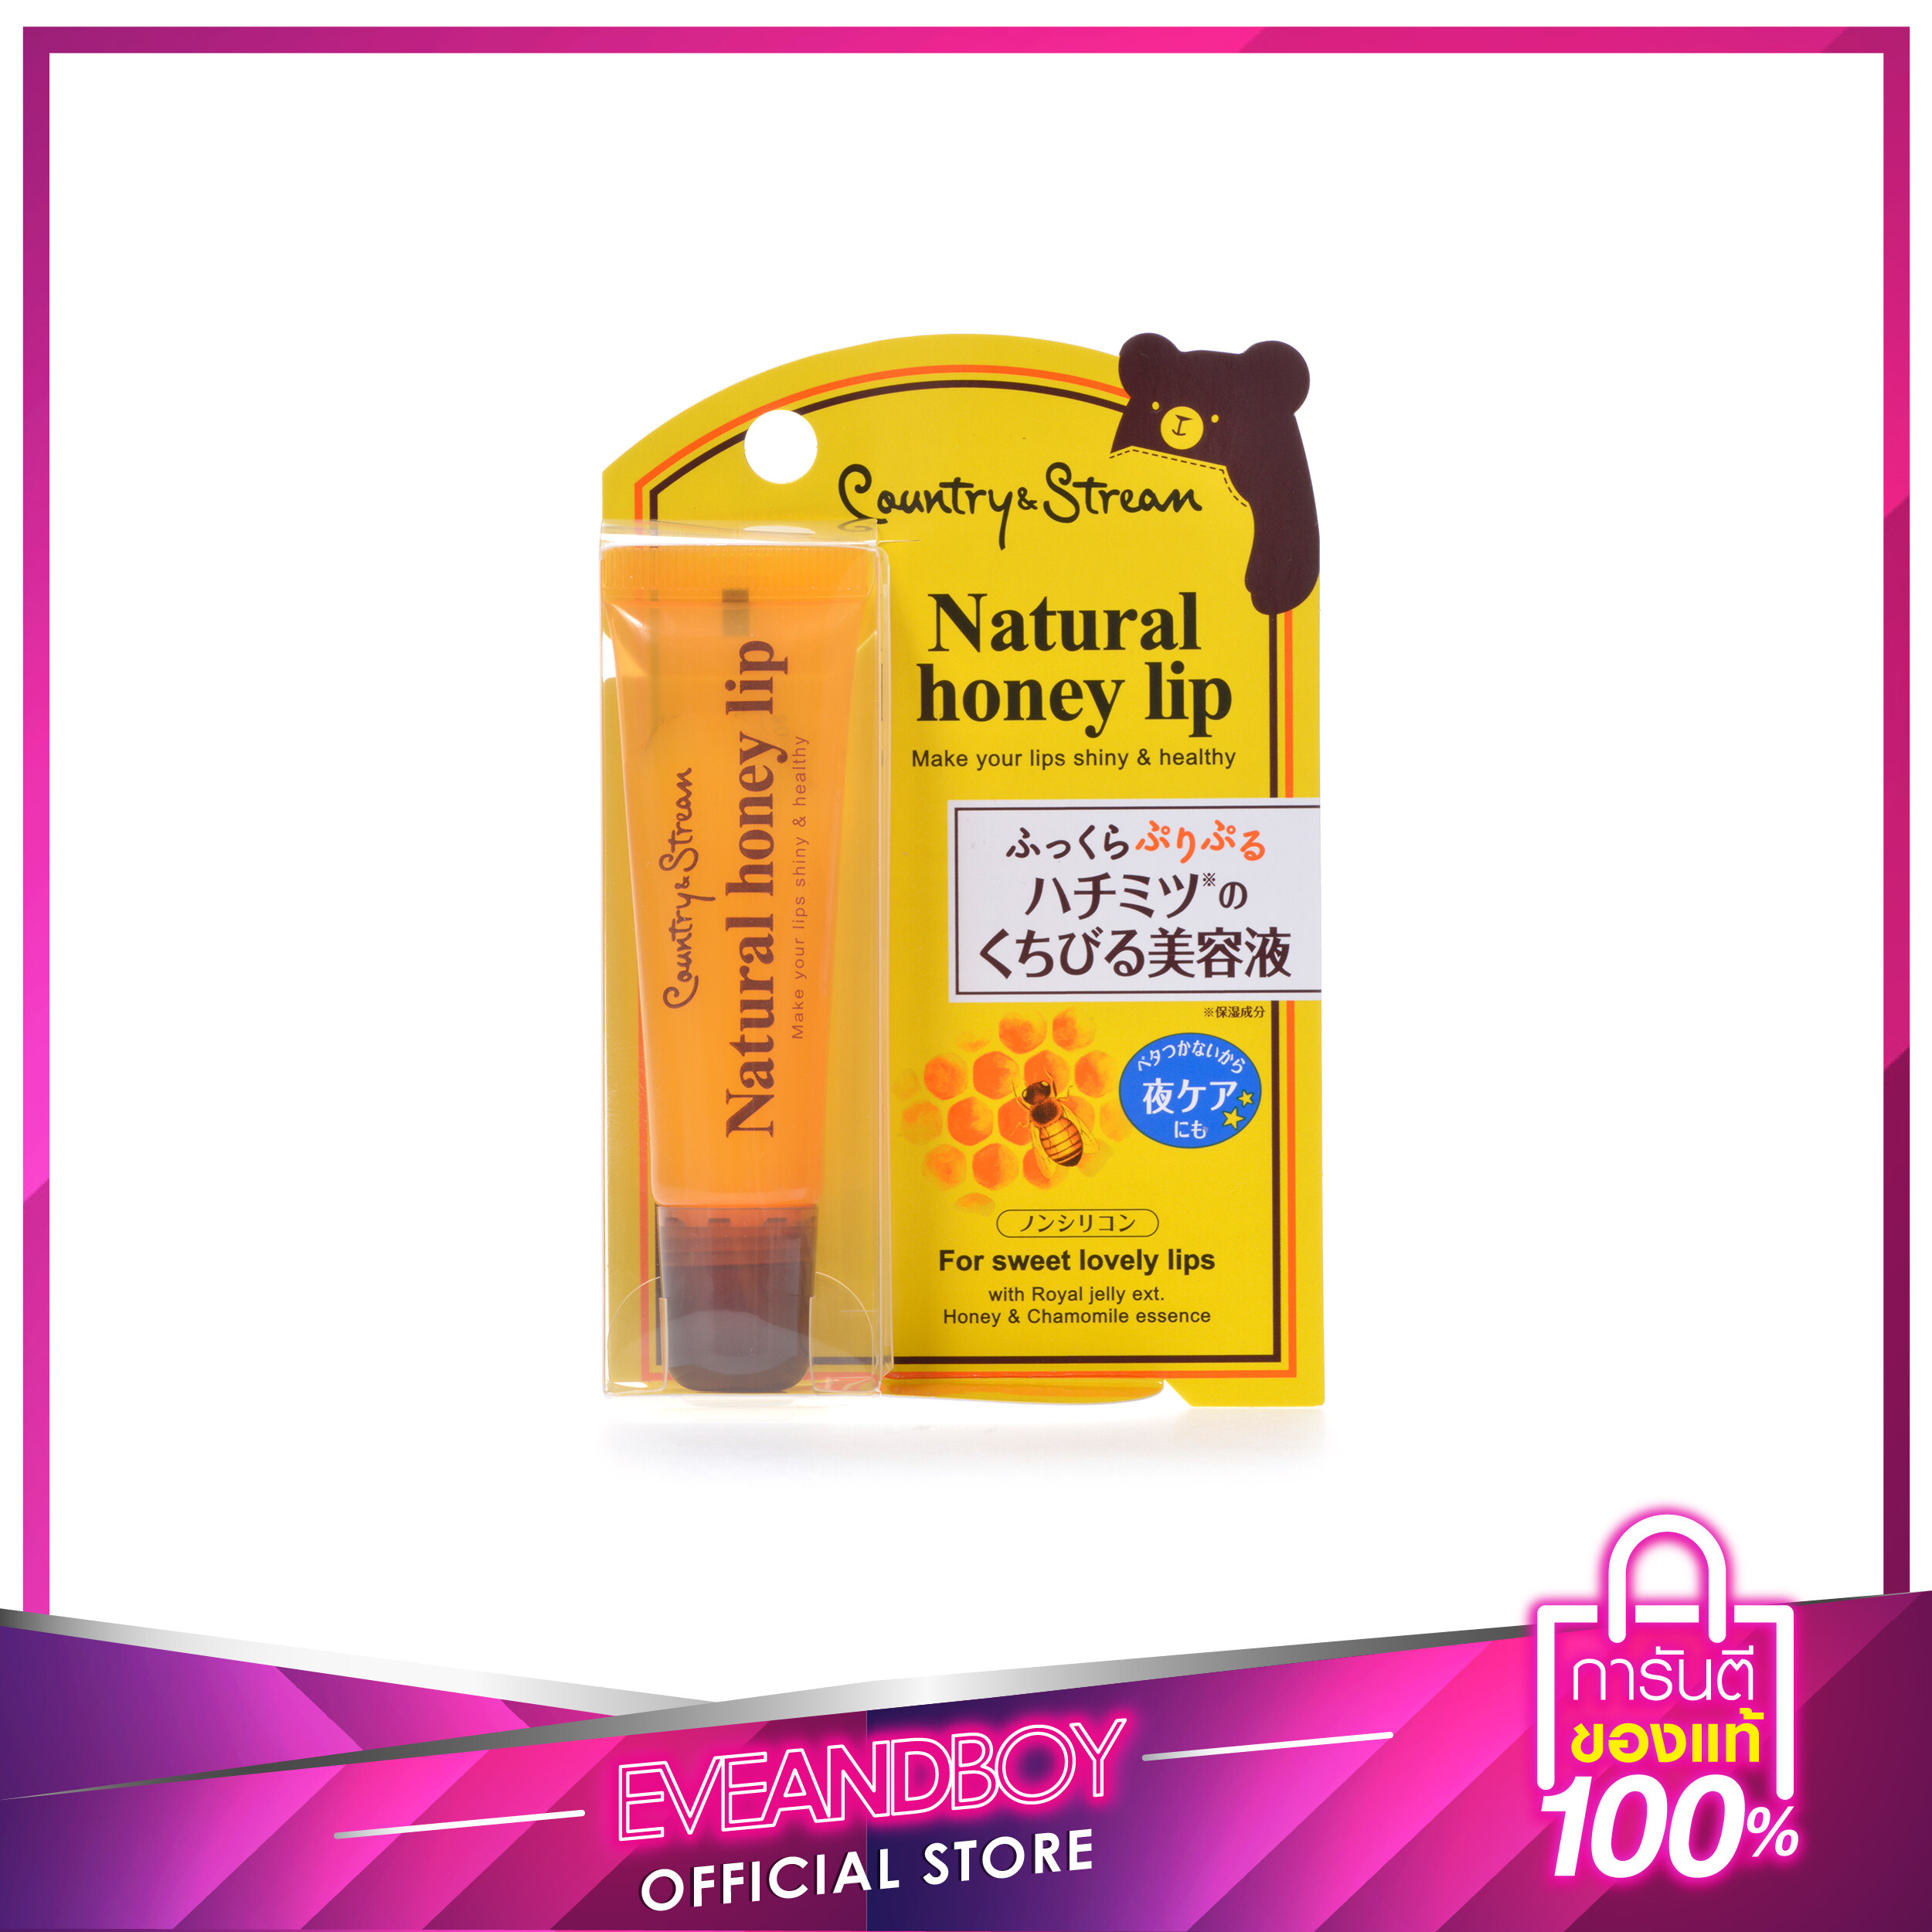 ลิปมันญาญ่า COUNTRY & STREAM - Natural Honey Lip 10 g.